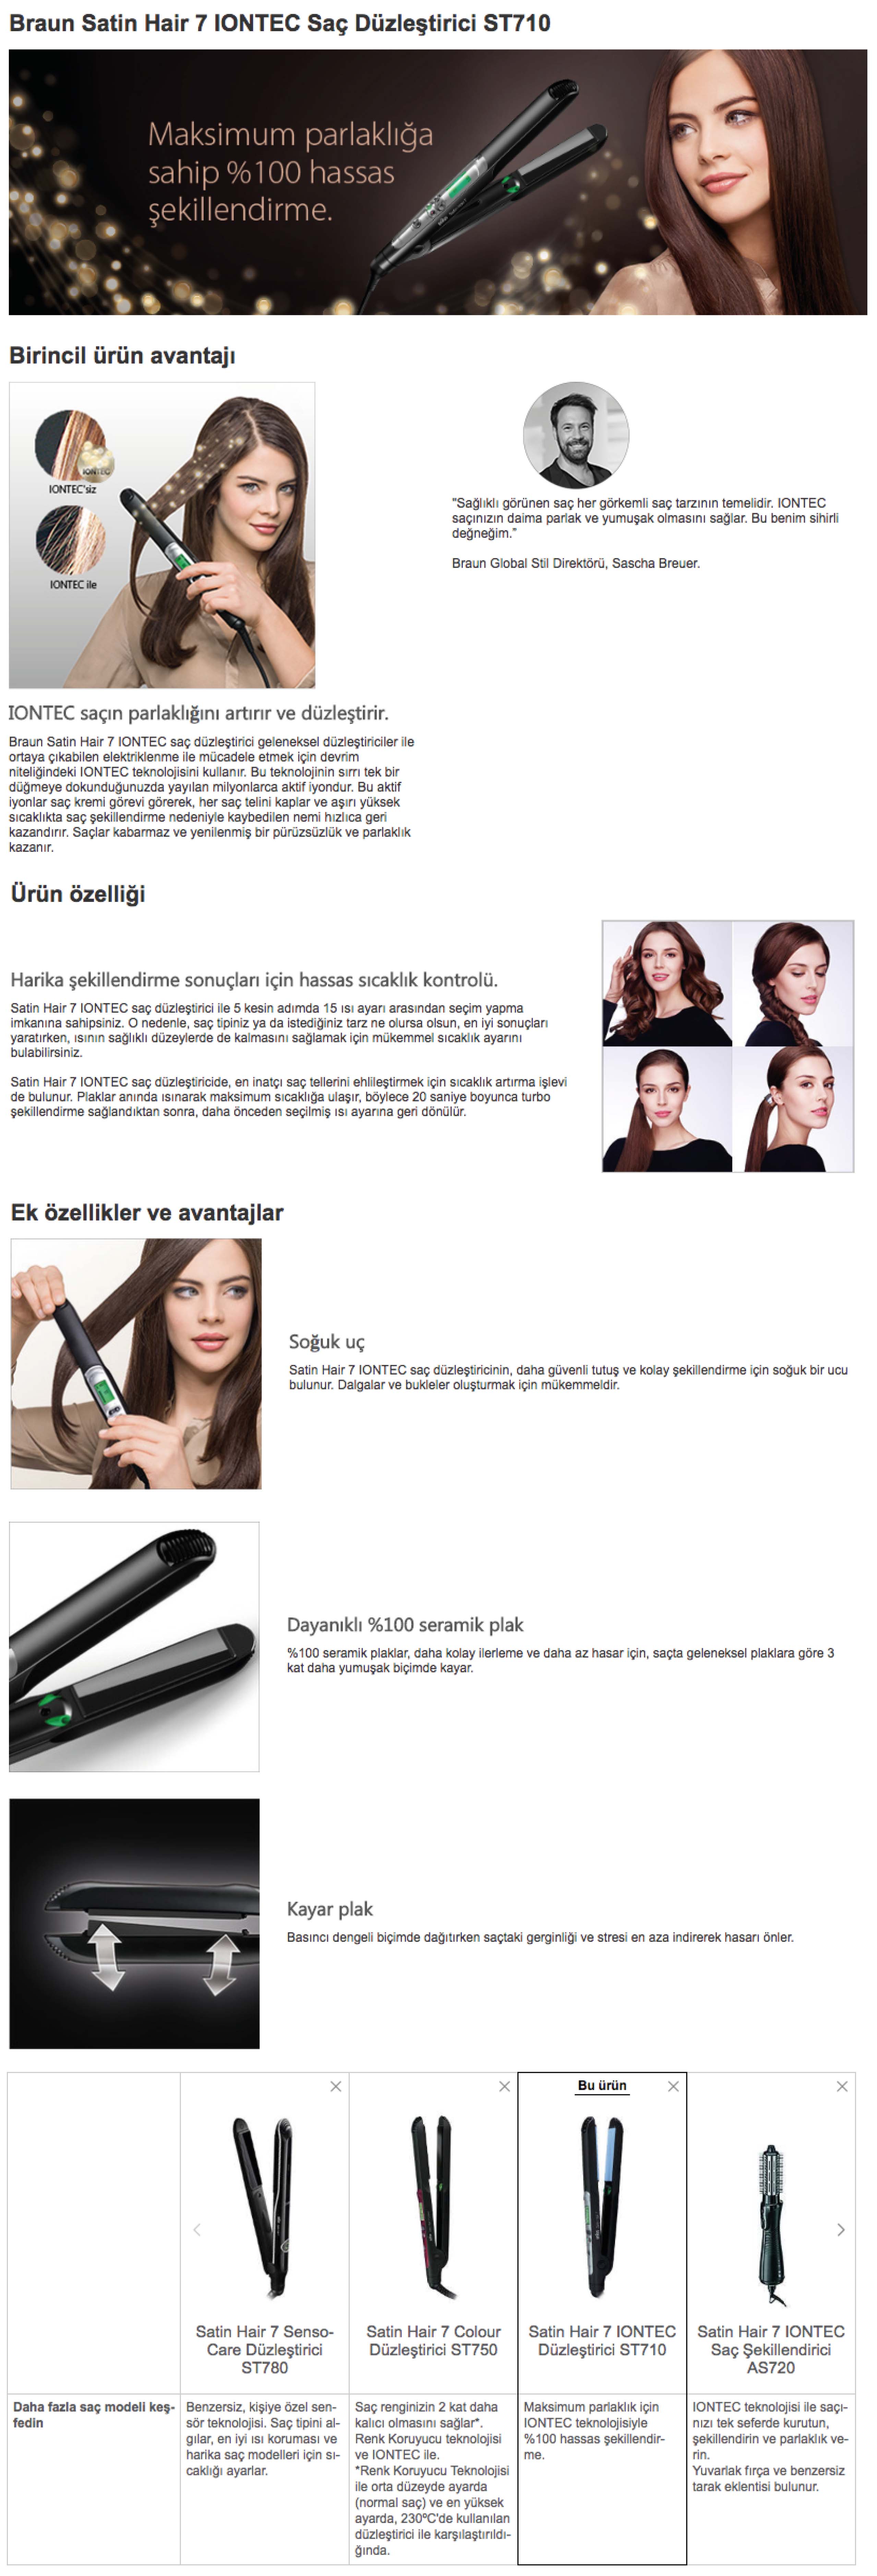 Braun Satin Hair 7 Iontec Saç Düzleştirici ES2 ST710 Fiyatı